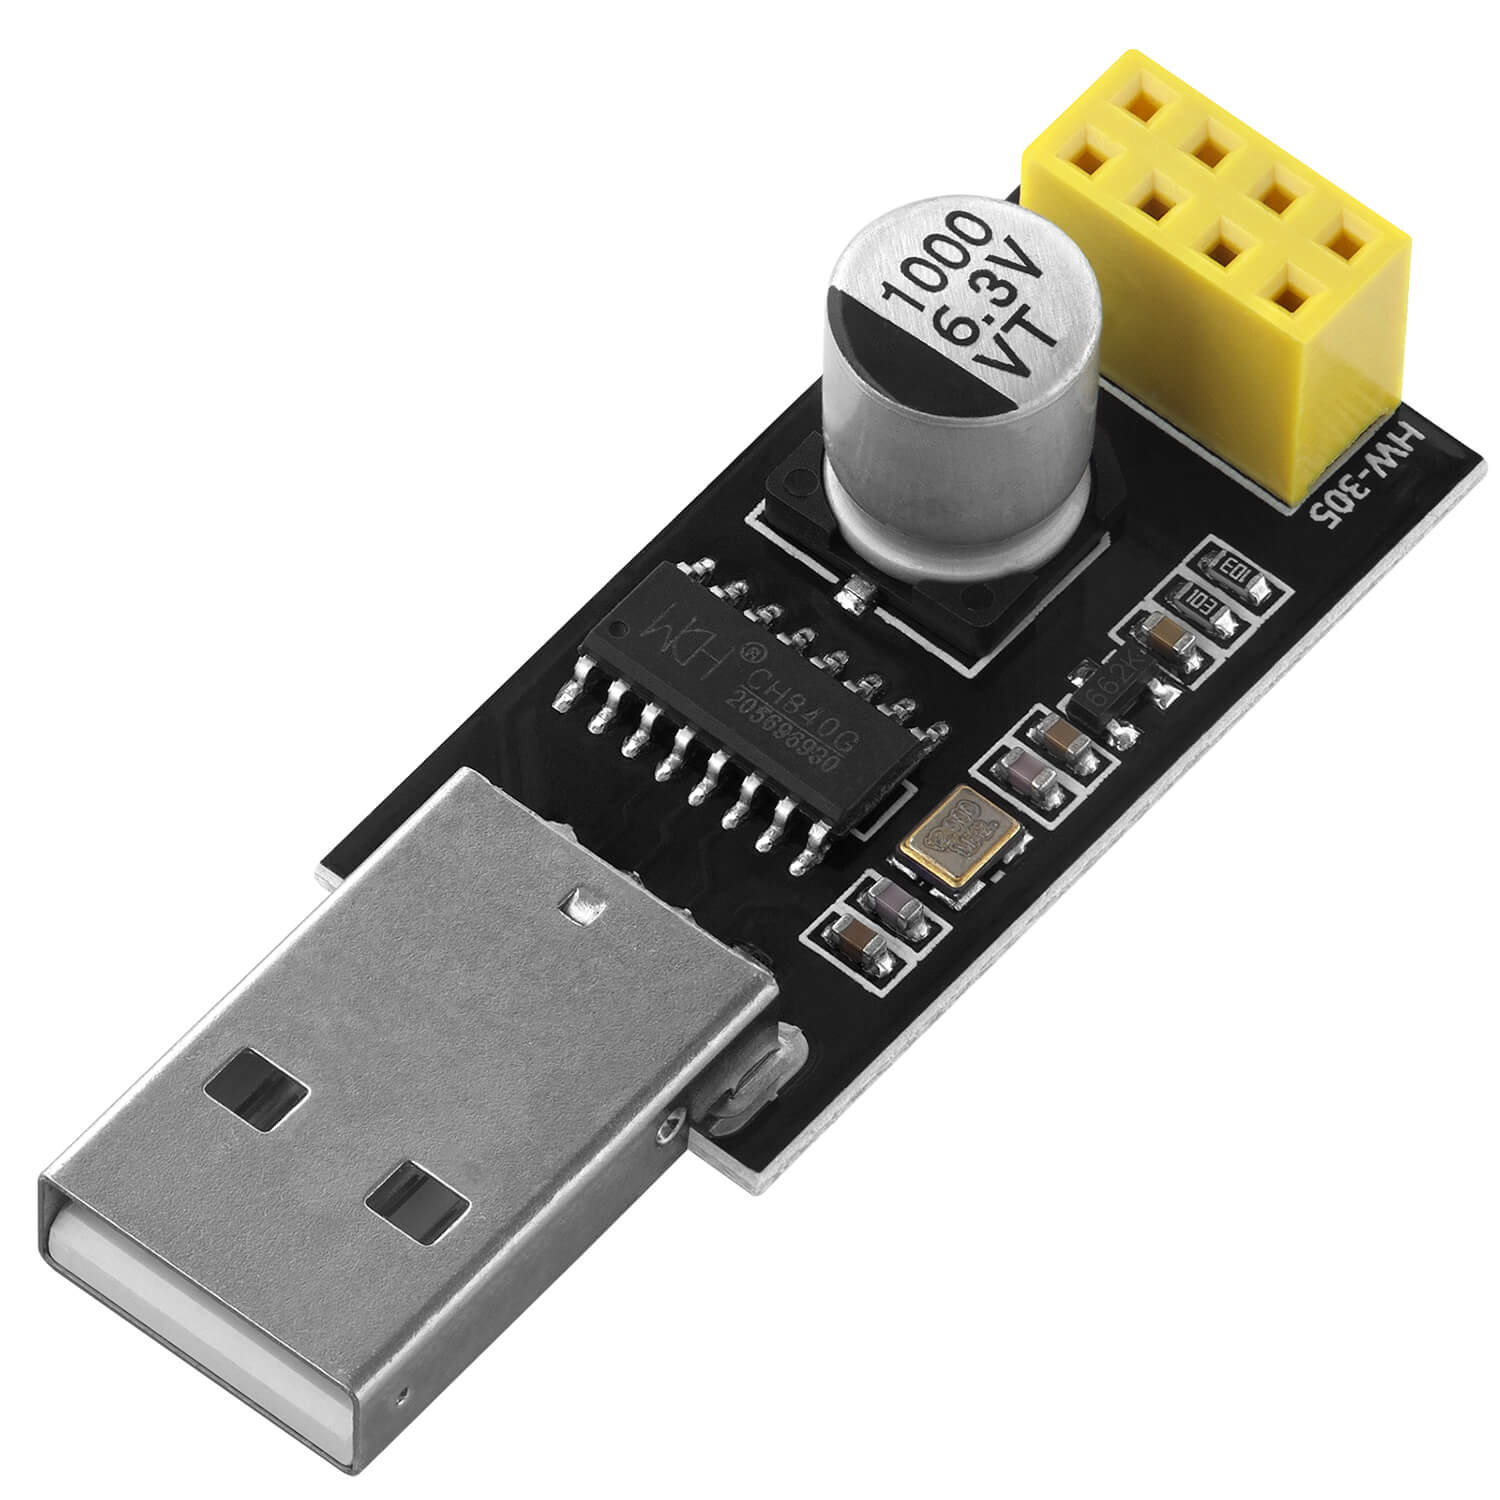 USB-zu-ESP8266 01S Serial Wireless Wifi Module für ESP-01S - AZ-Delivery